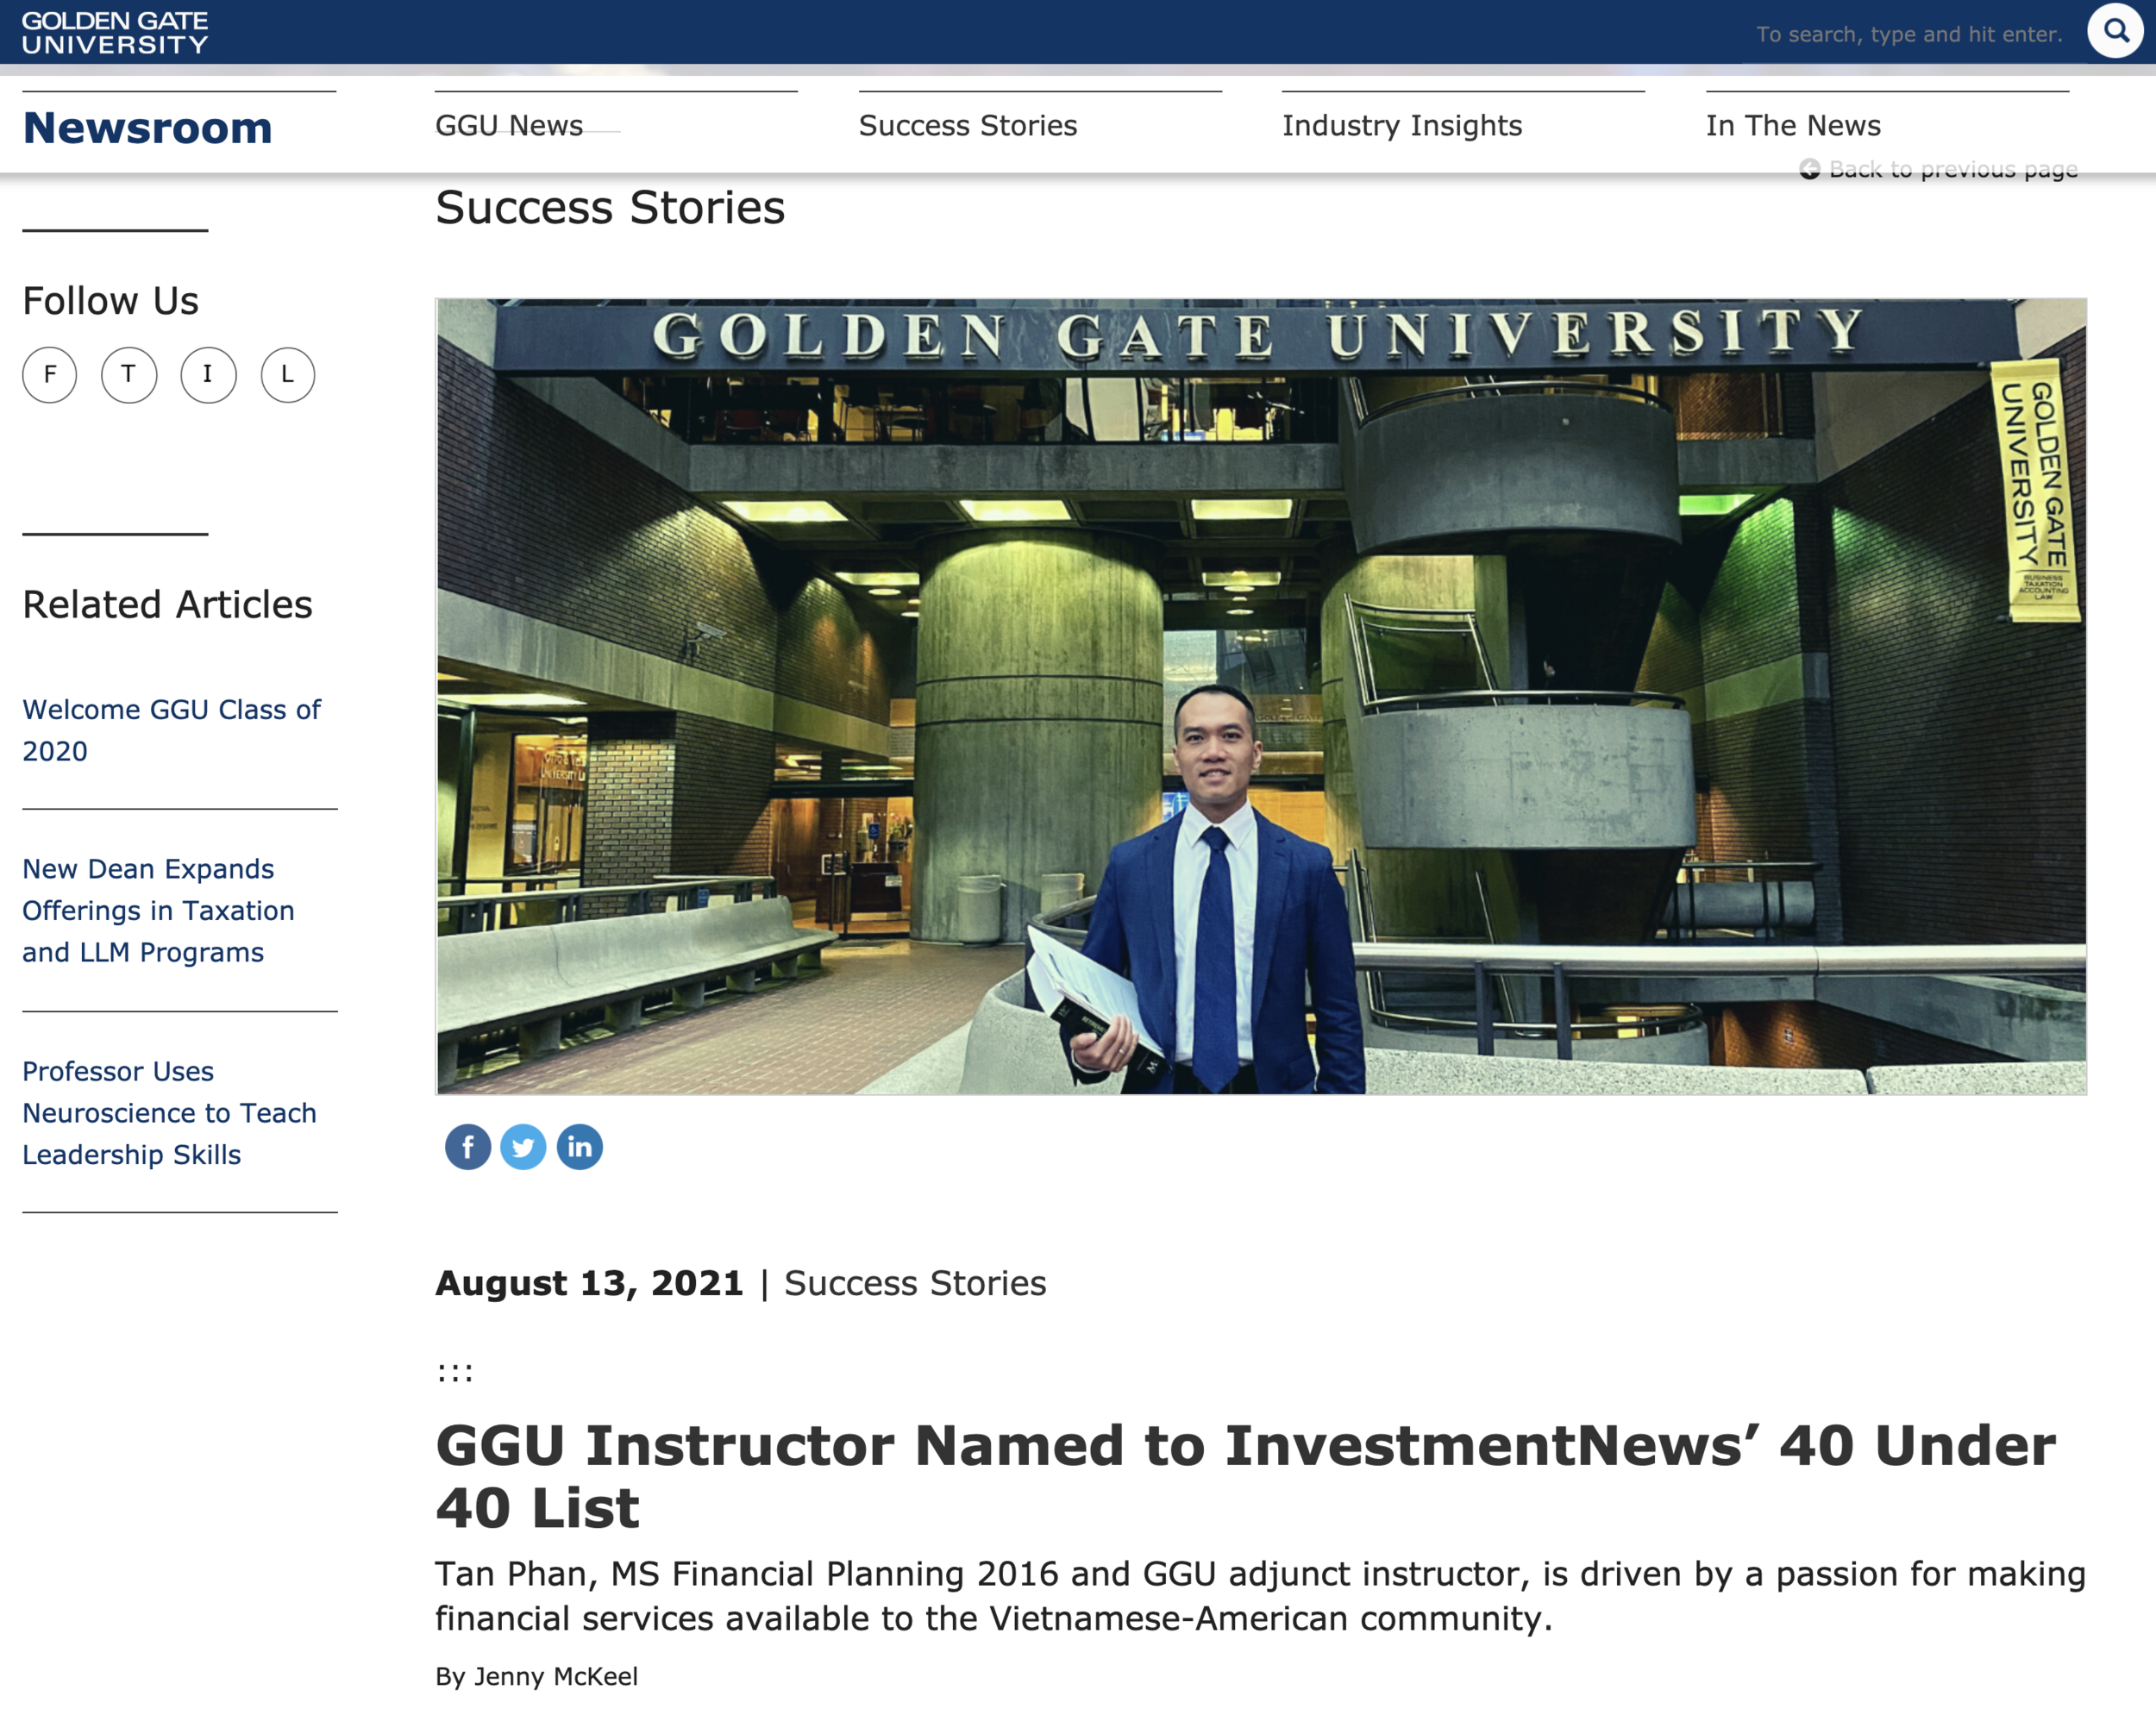 Golden Gate University Feature - InvestmentNews 40 Under 40